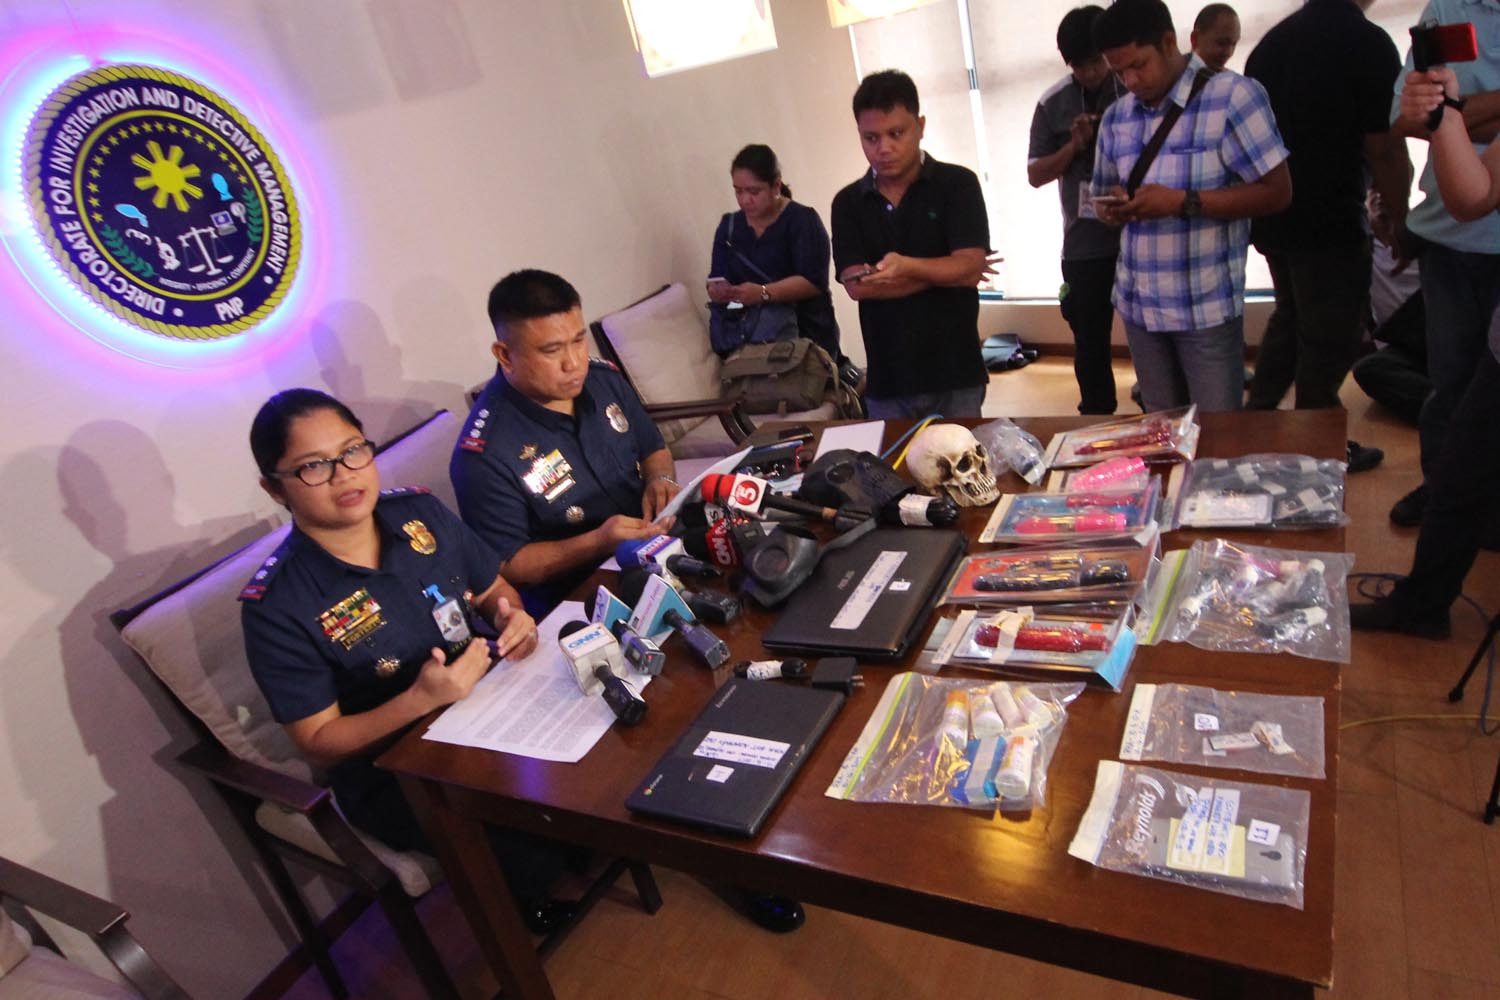 American nabbed for booking Filipina minors to reenact ’Fifty Shades of Grey’